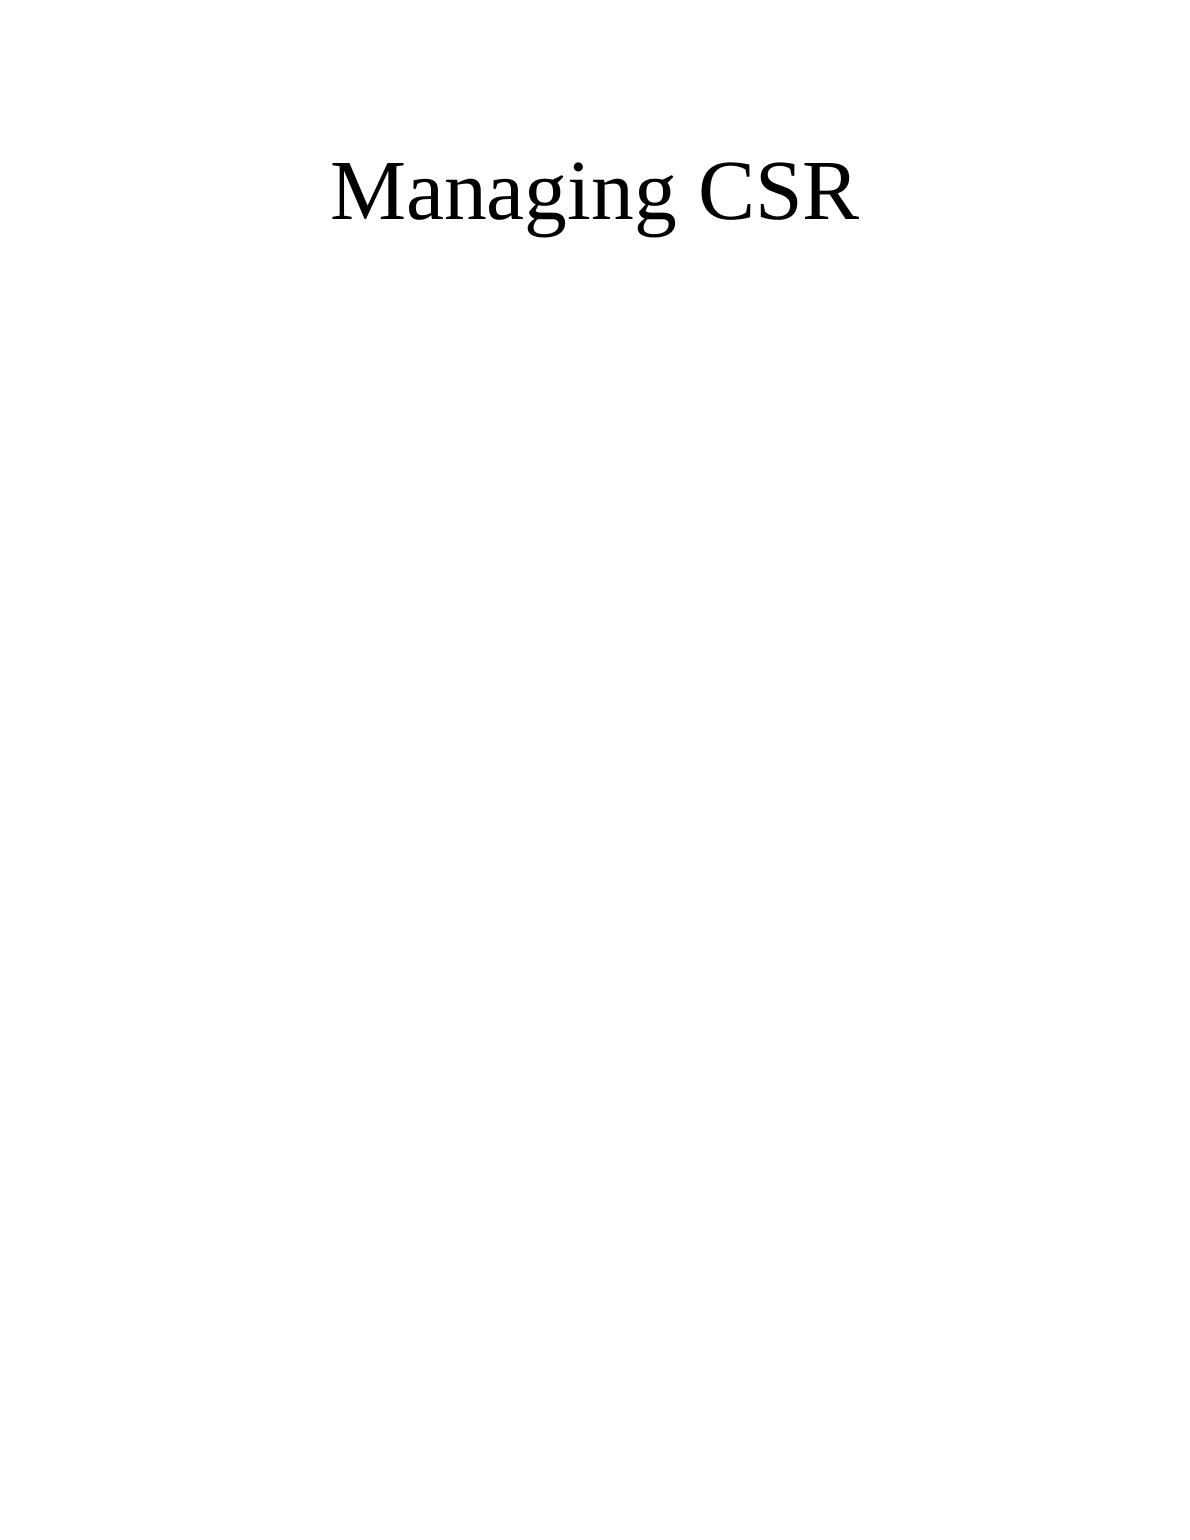 Managing CSR_1